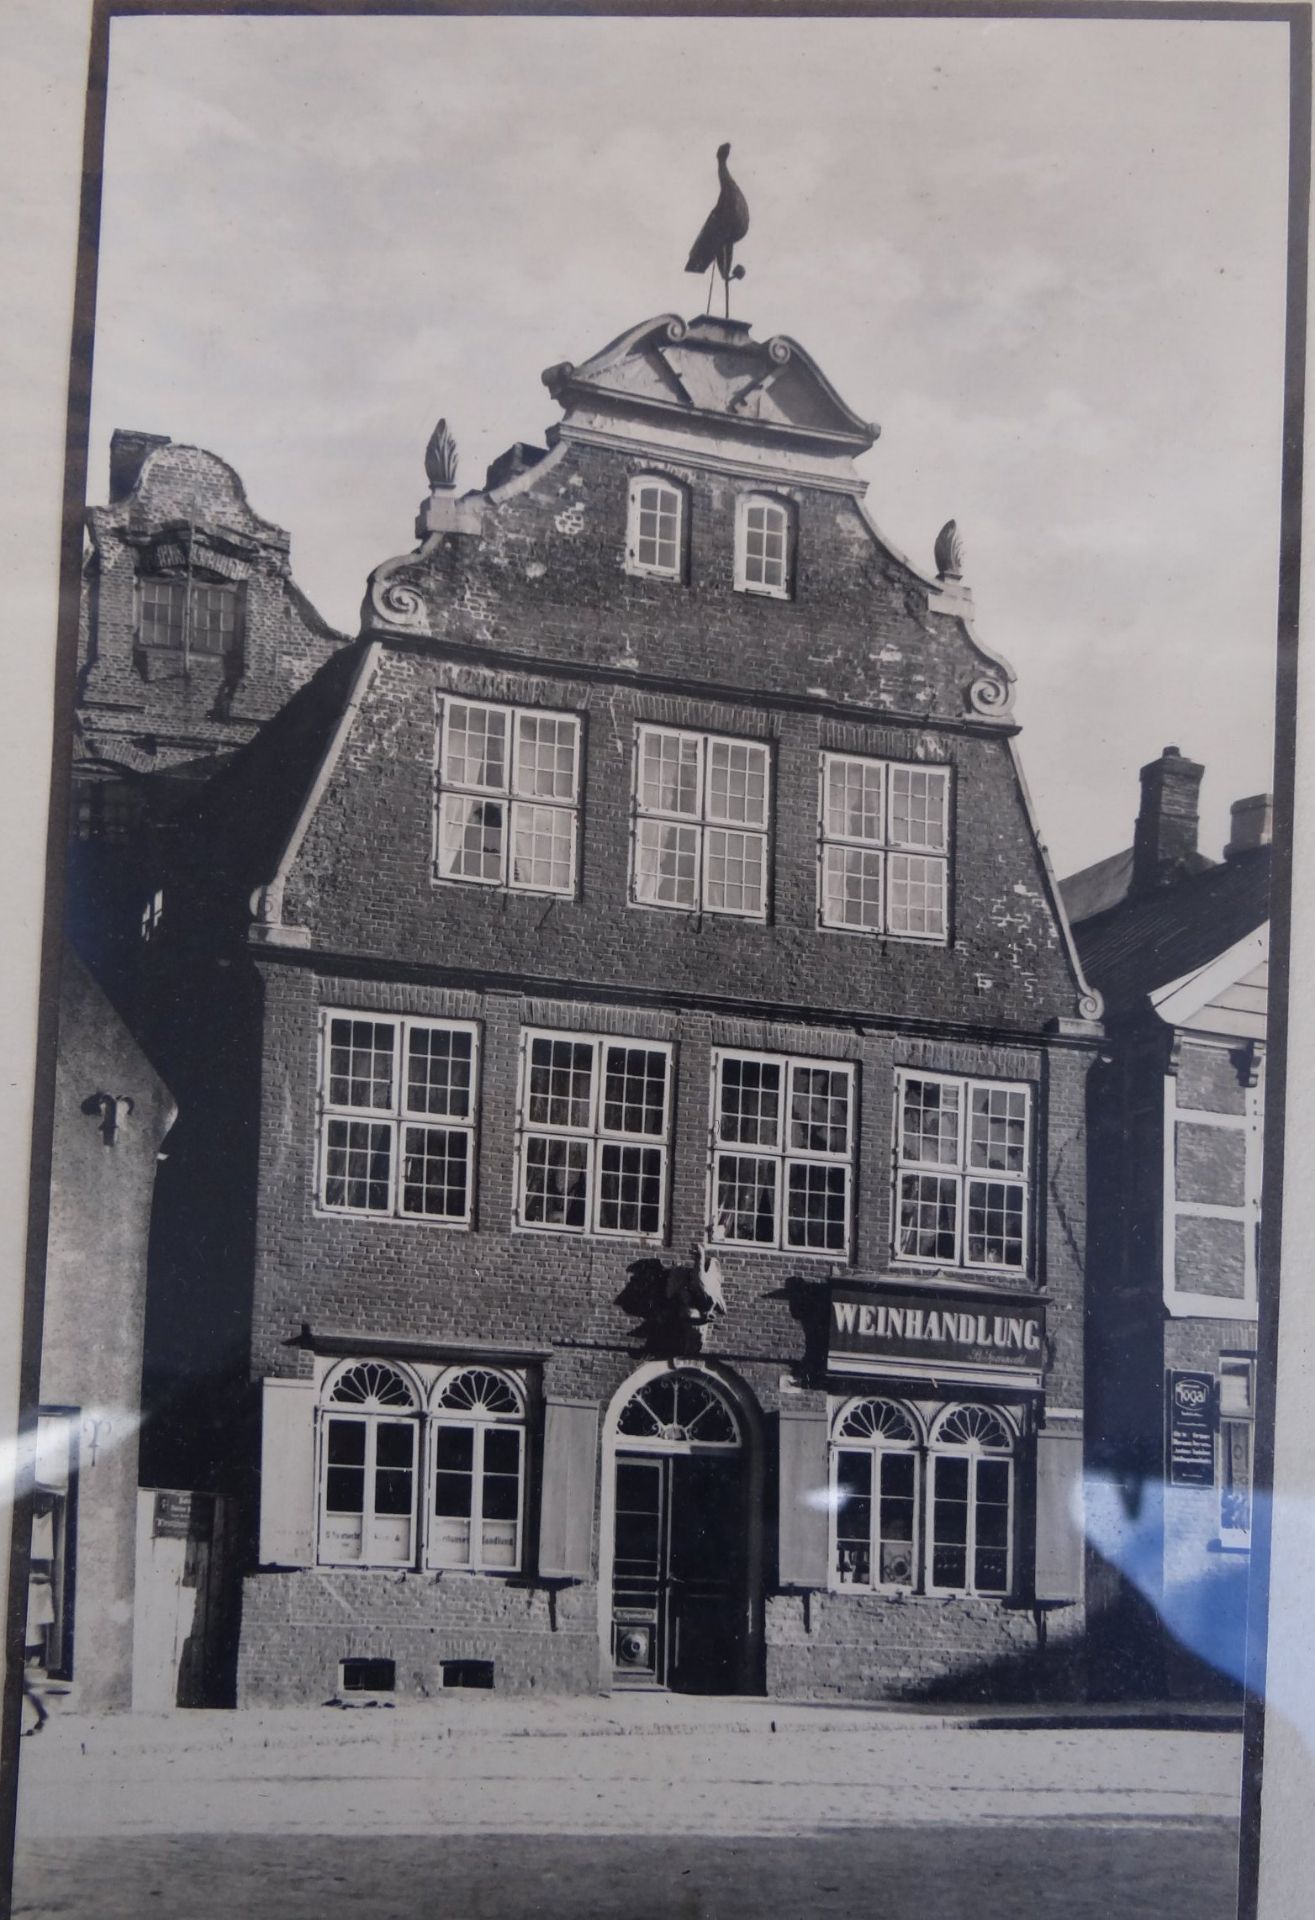 gerahmtes alte Foto vom Kranichhaus in Otterndorf, signiert Ernst Nöldeke jun., verso mit Widmung